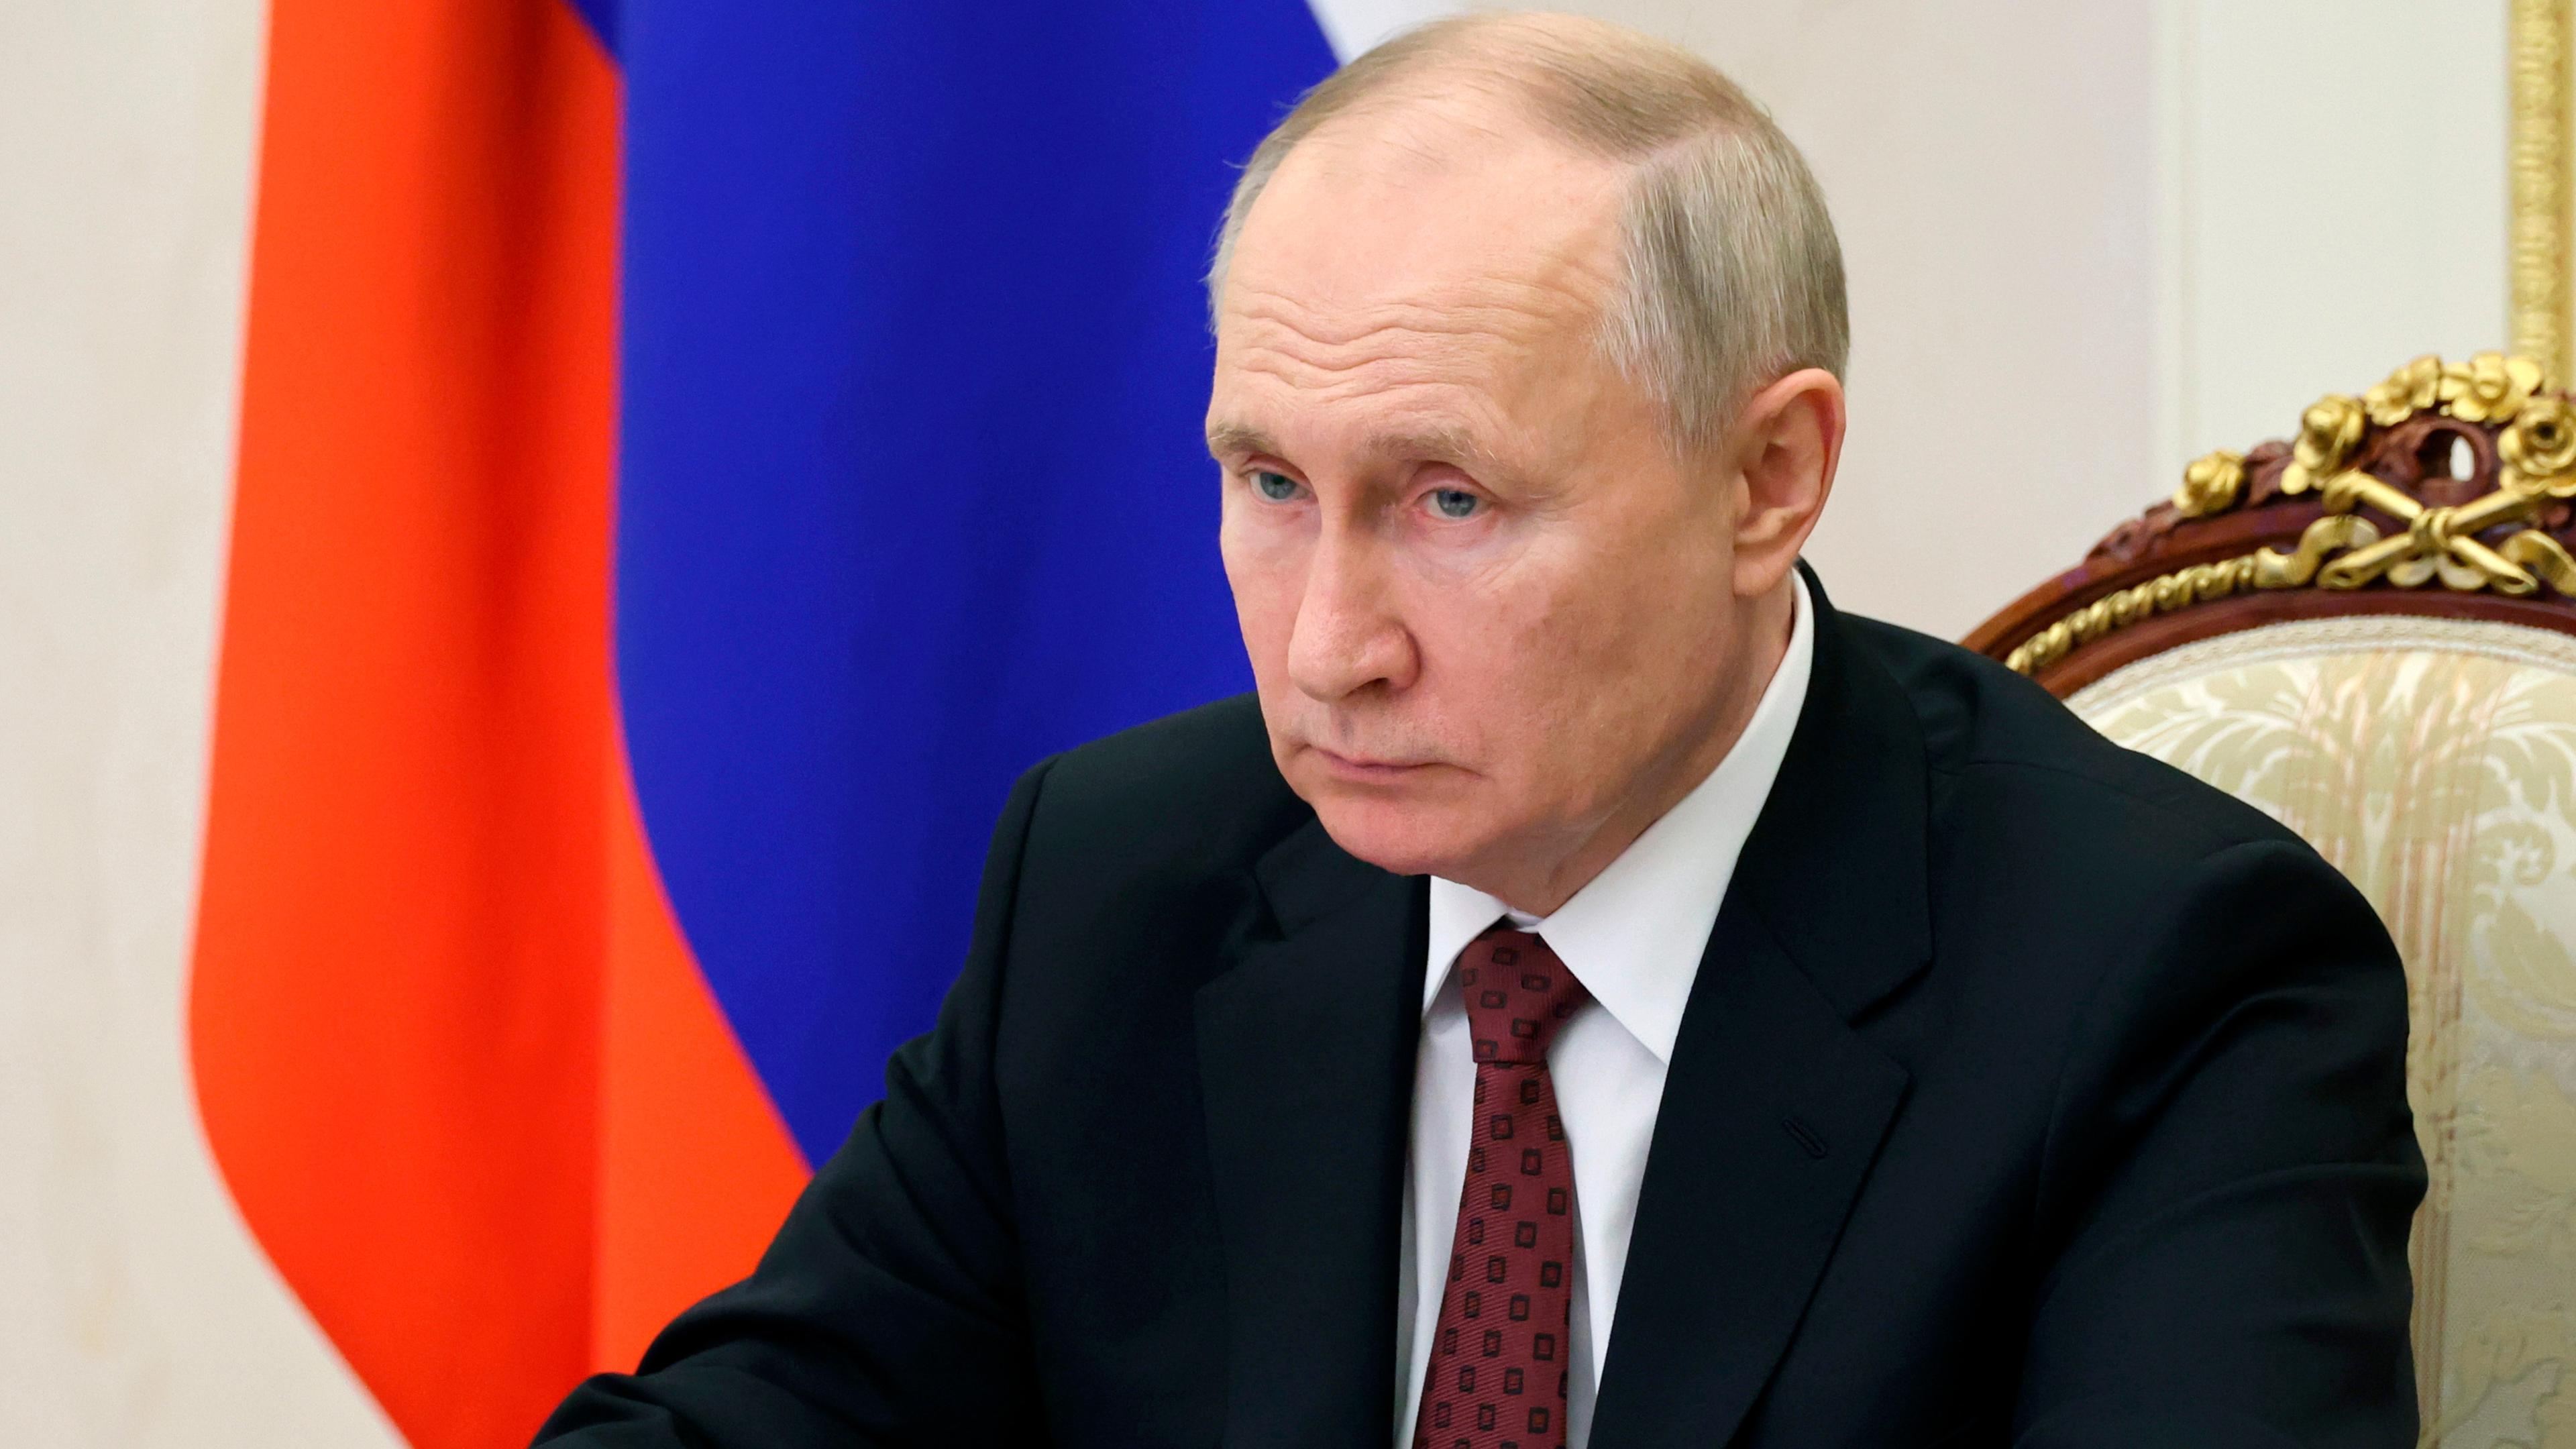 Vladimir Putin, aufgenommen am 04.12.2020 in Moskau (Russland)